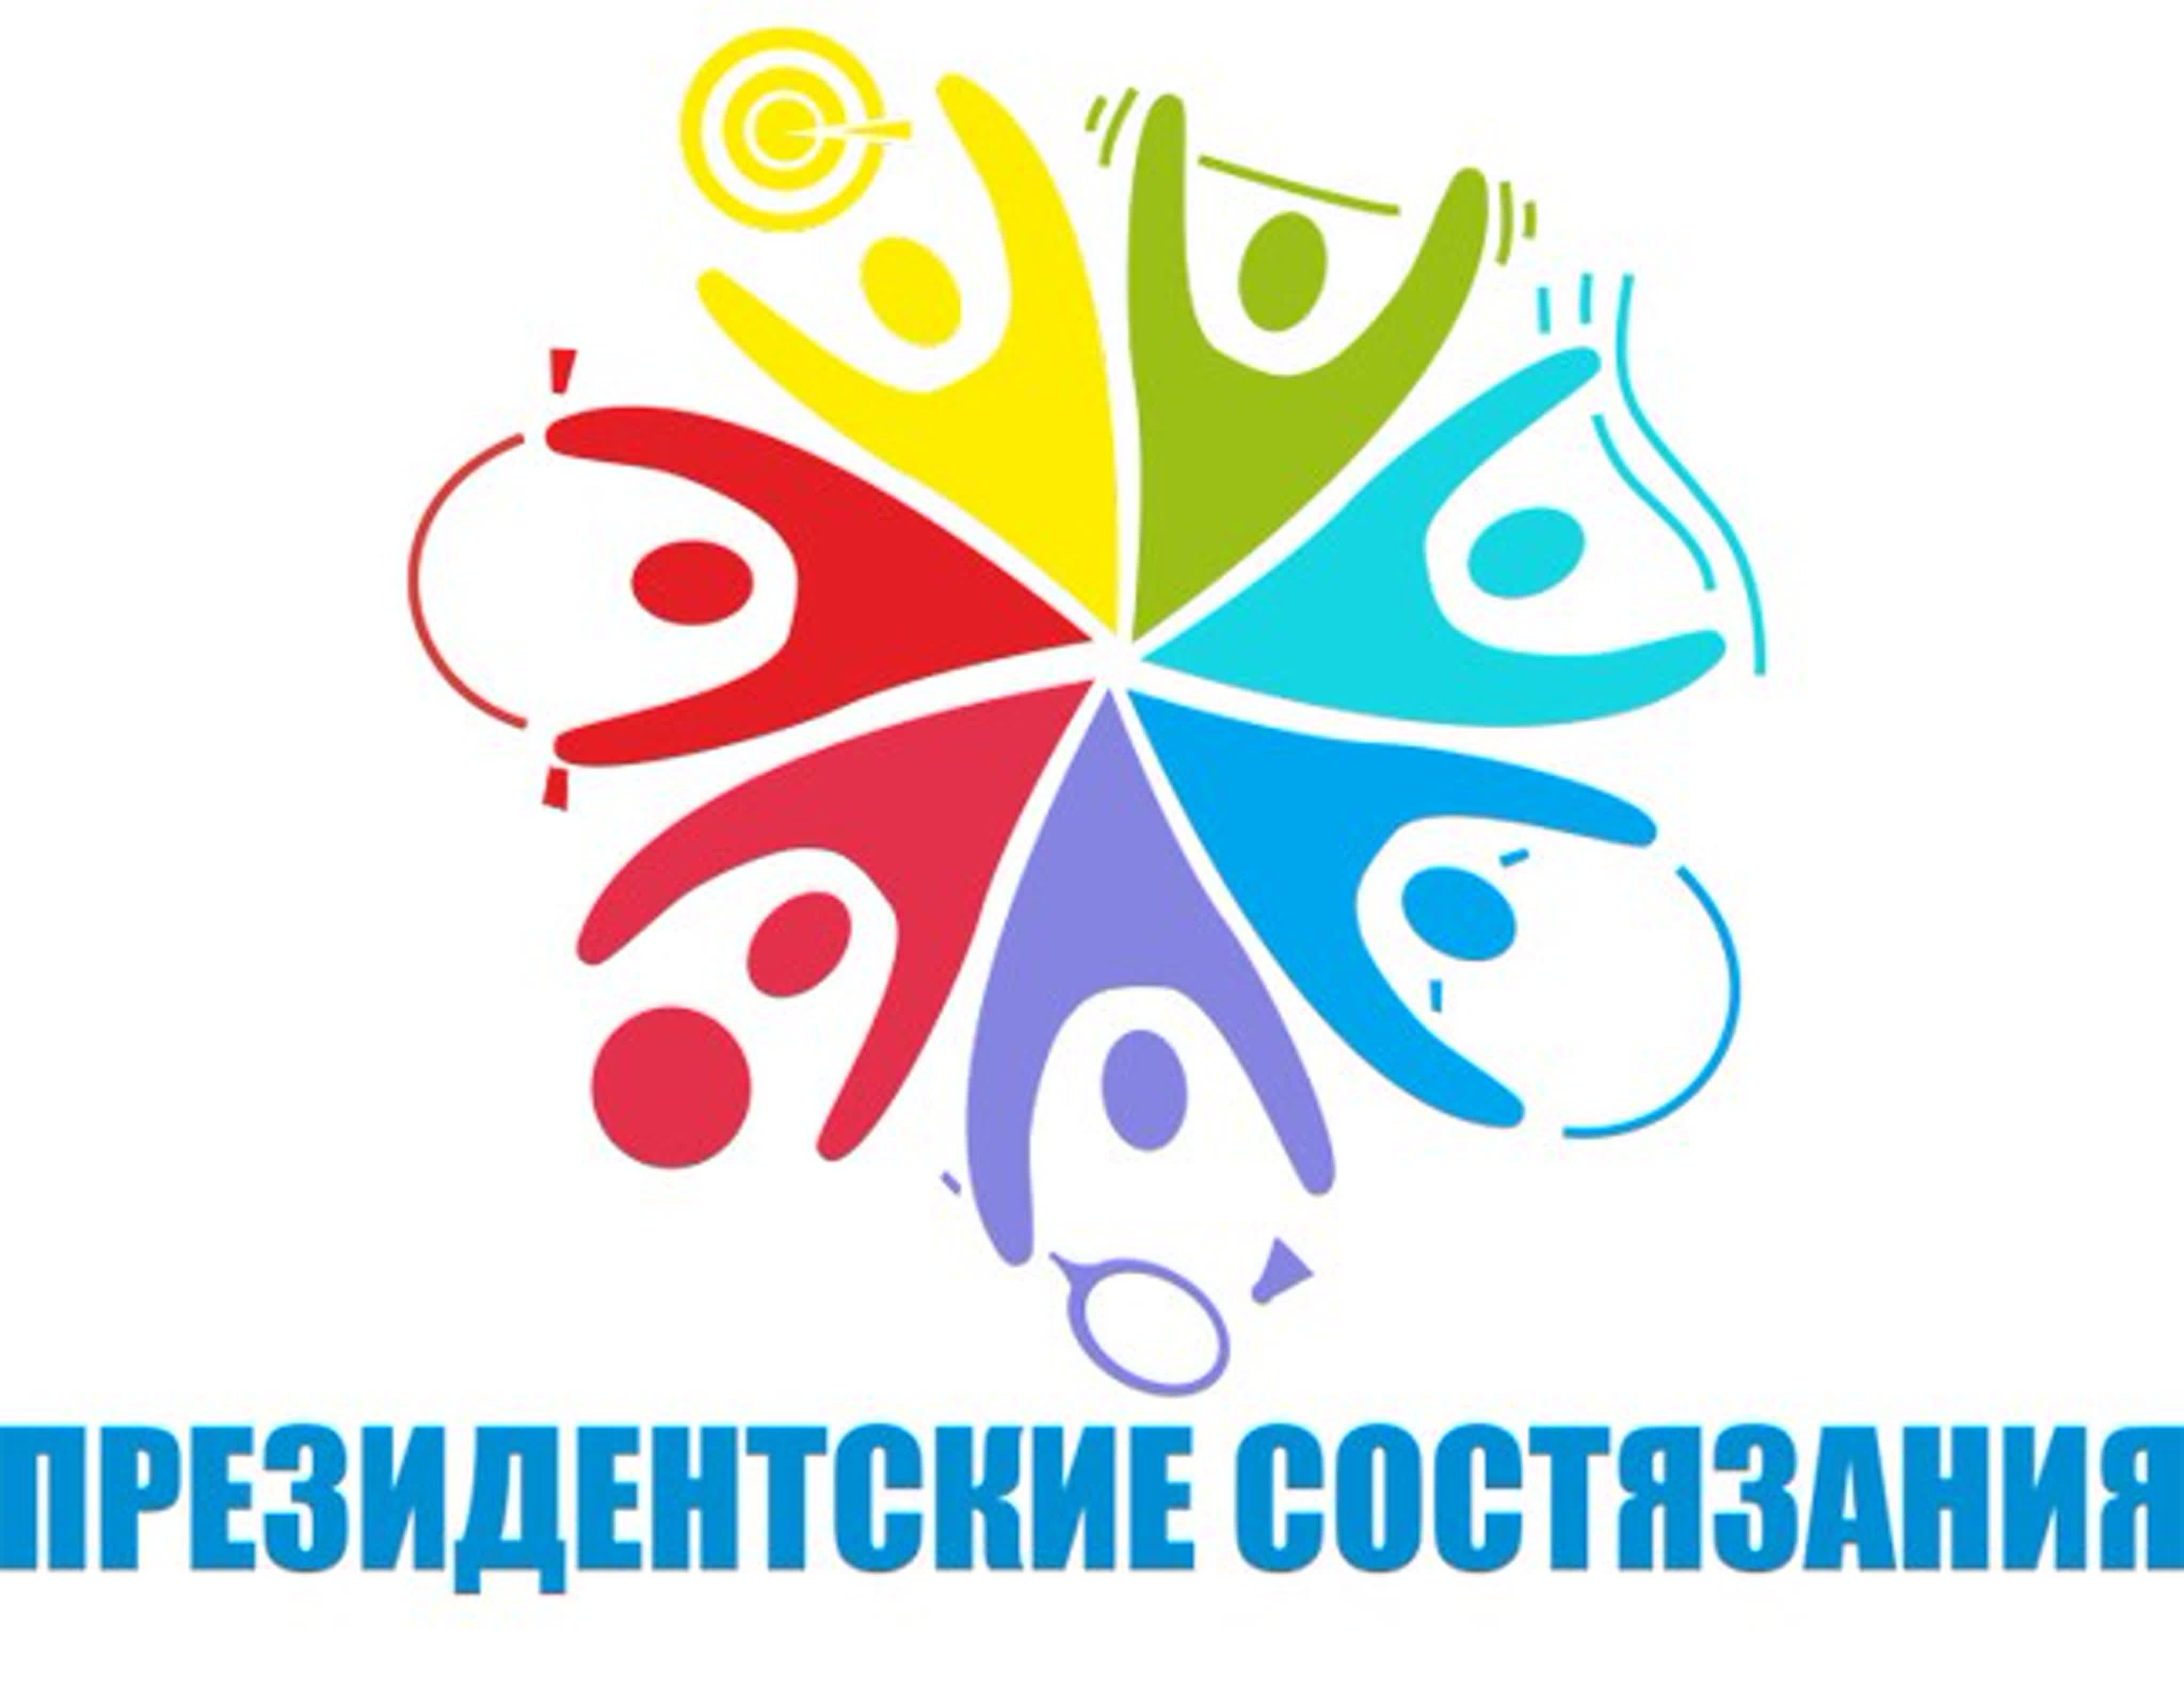 Всероссийских соревнований «Президентские состязания».